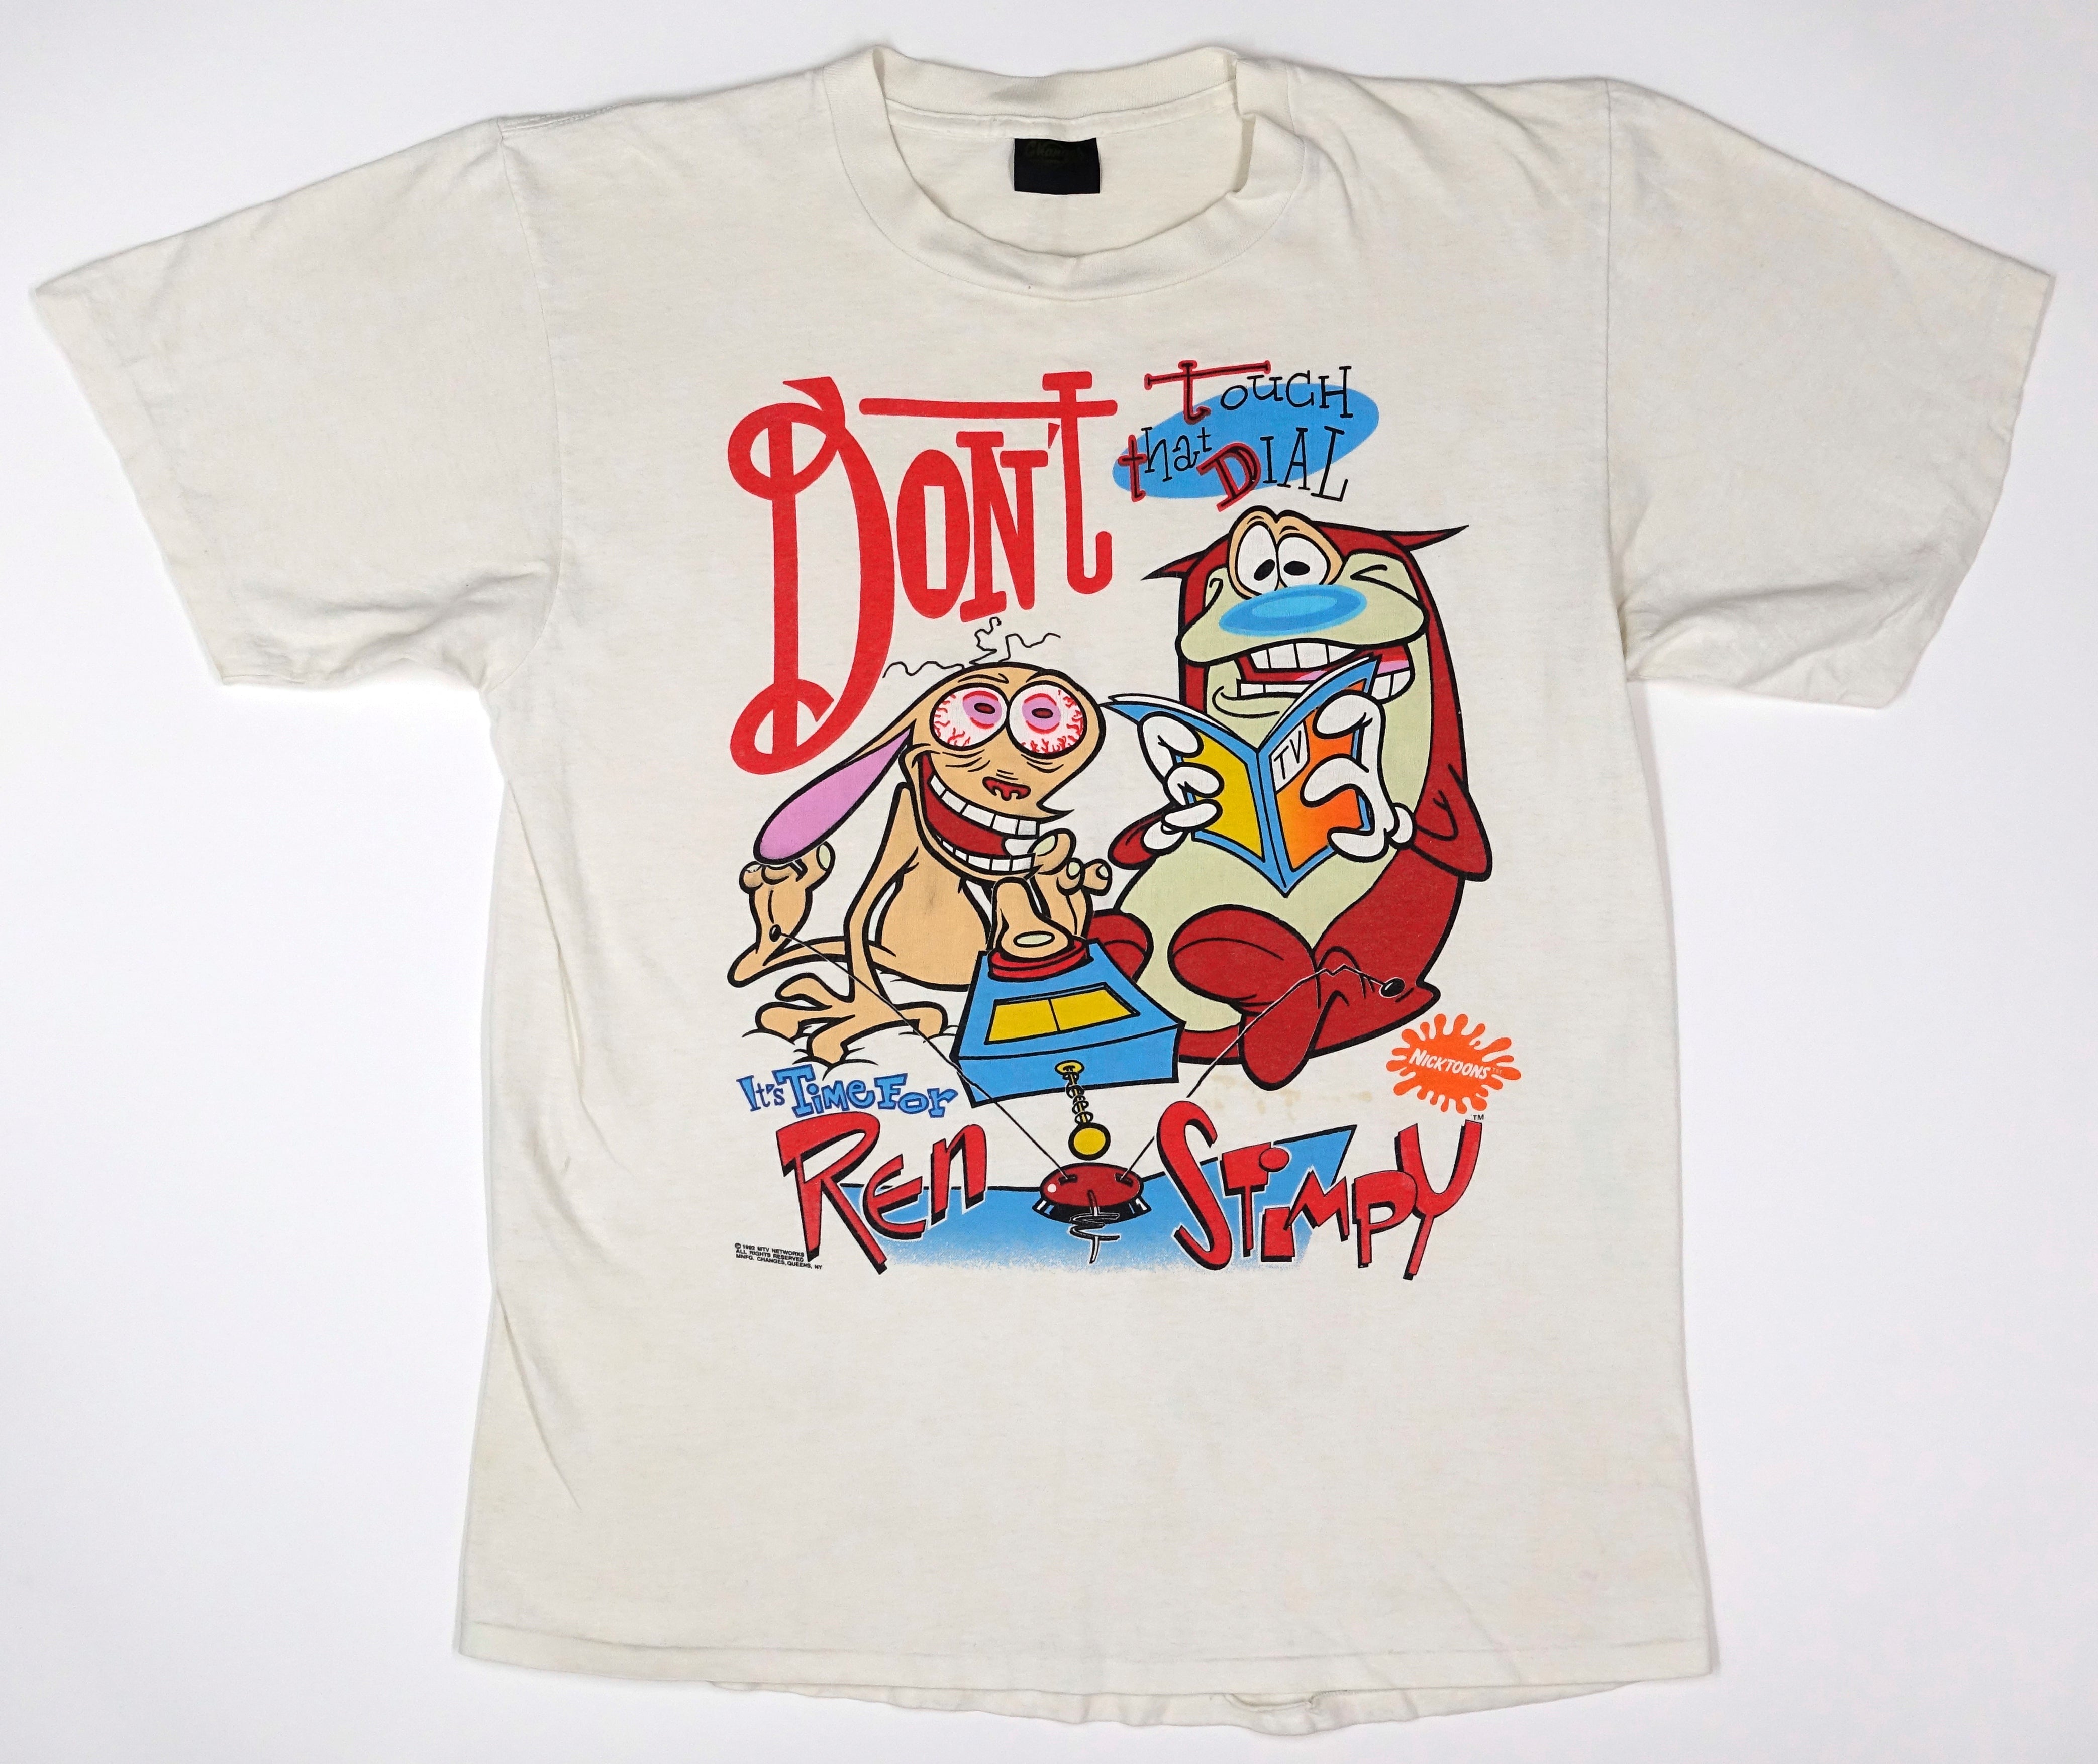 Ren & Stimpy - Don't Touch That Dial ©1992 Shirt Size XL